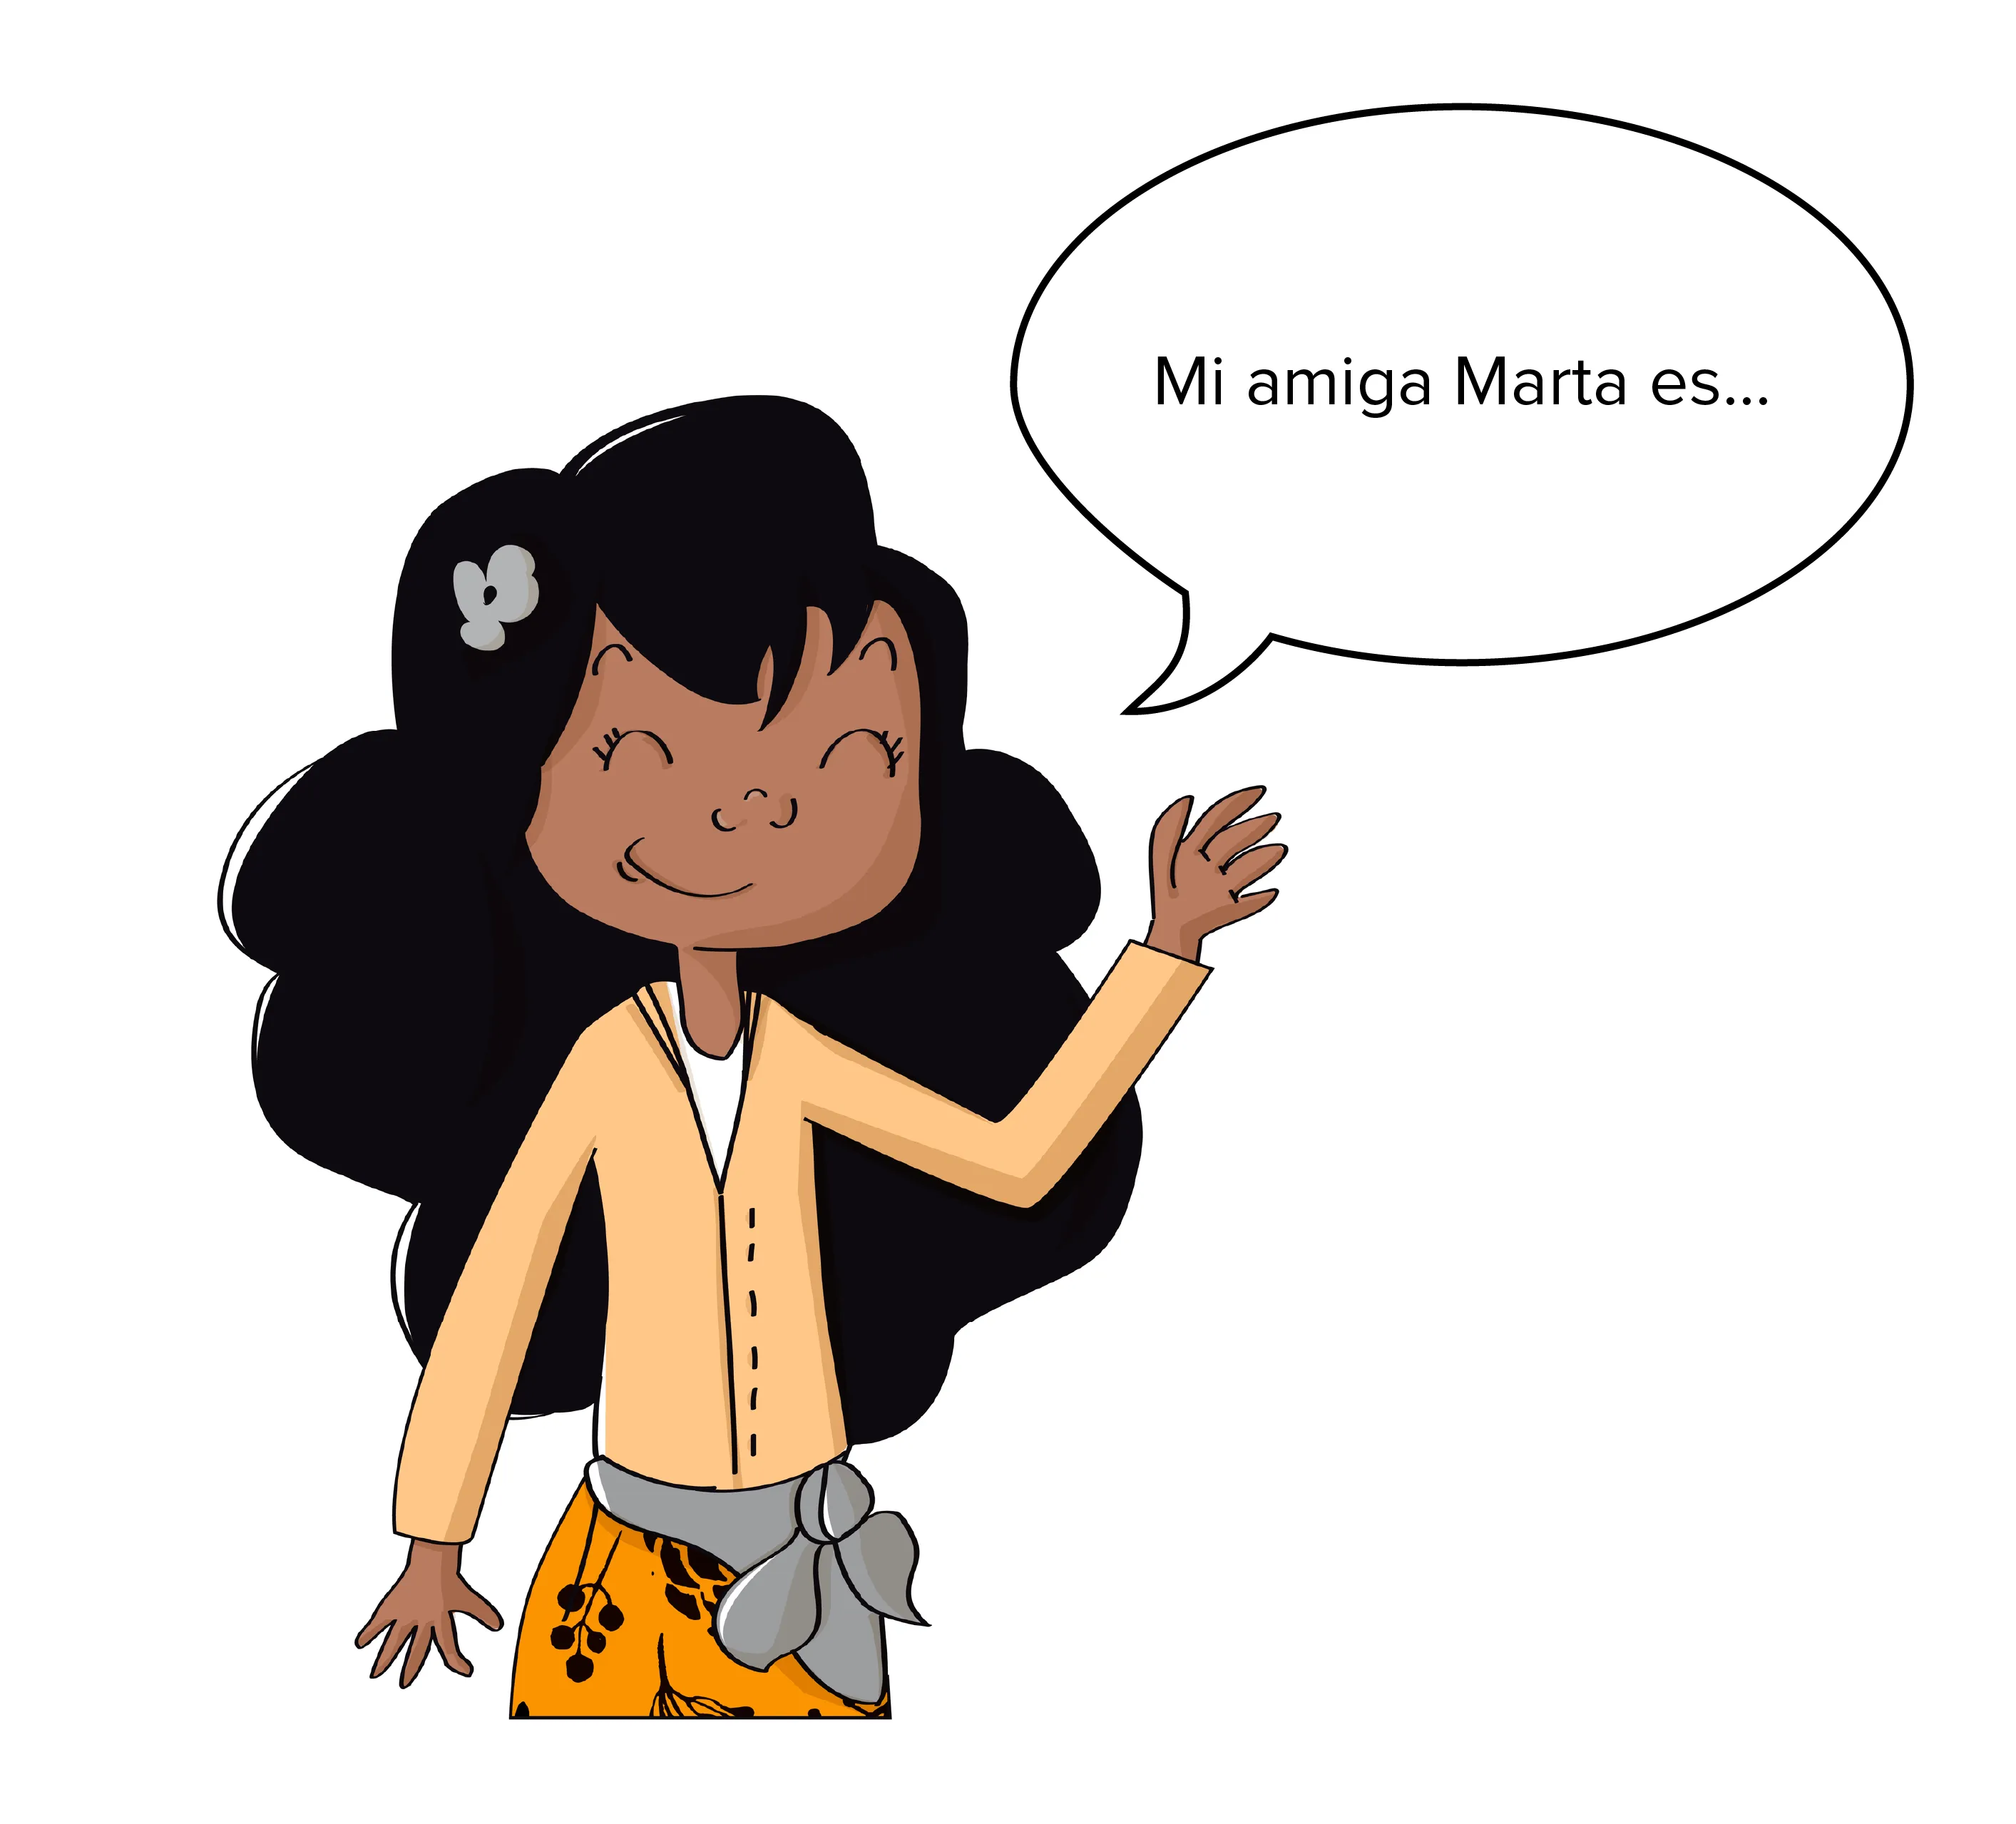 Mi amiga Marta es...